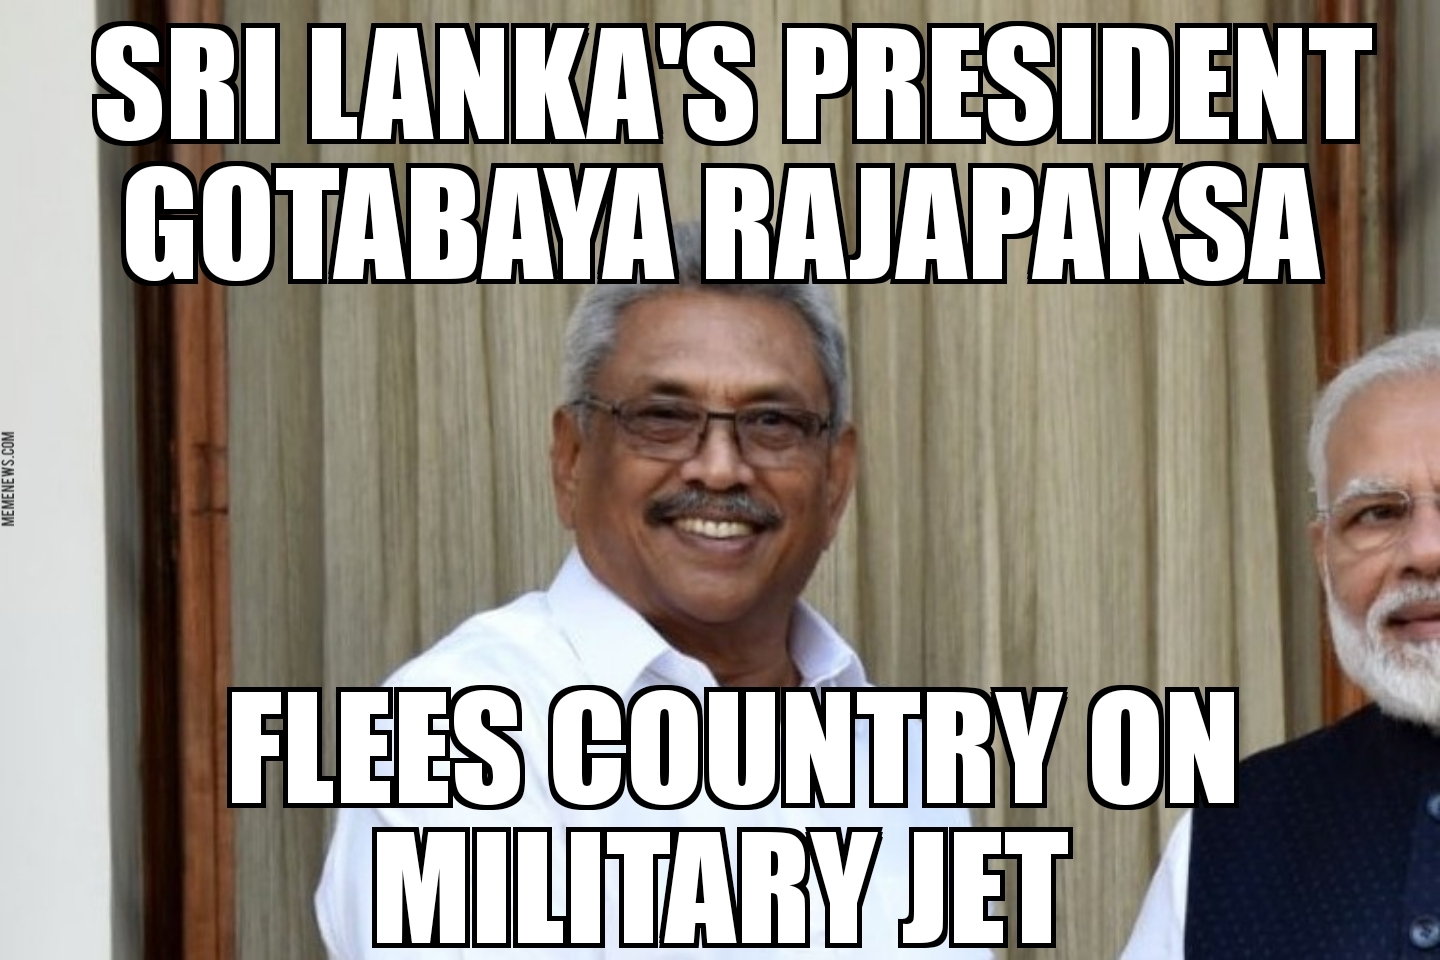 Sri Lanka president flees